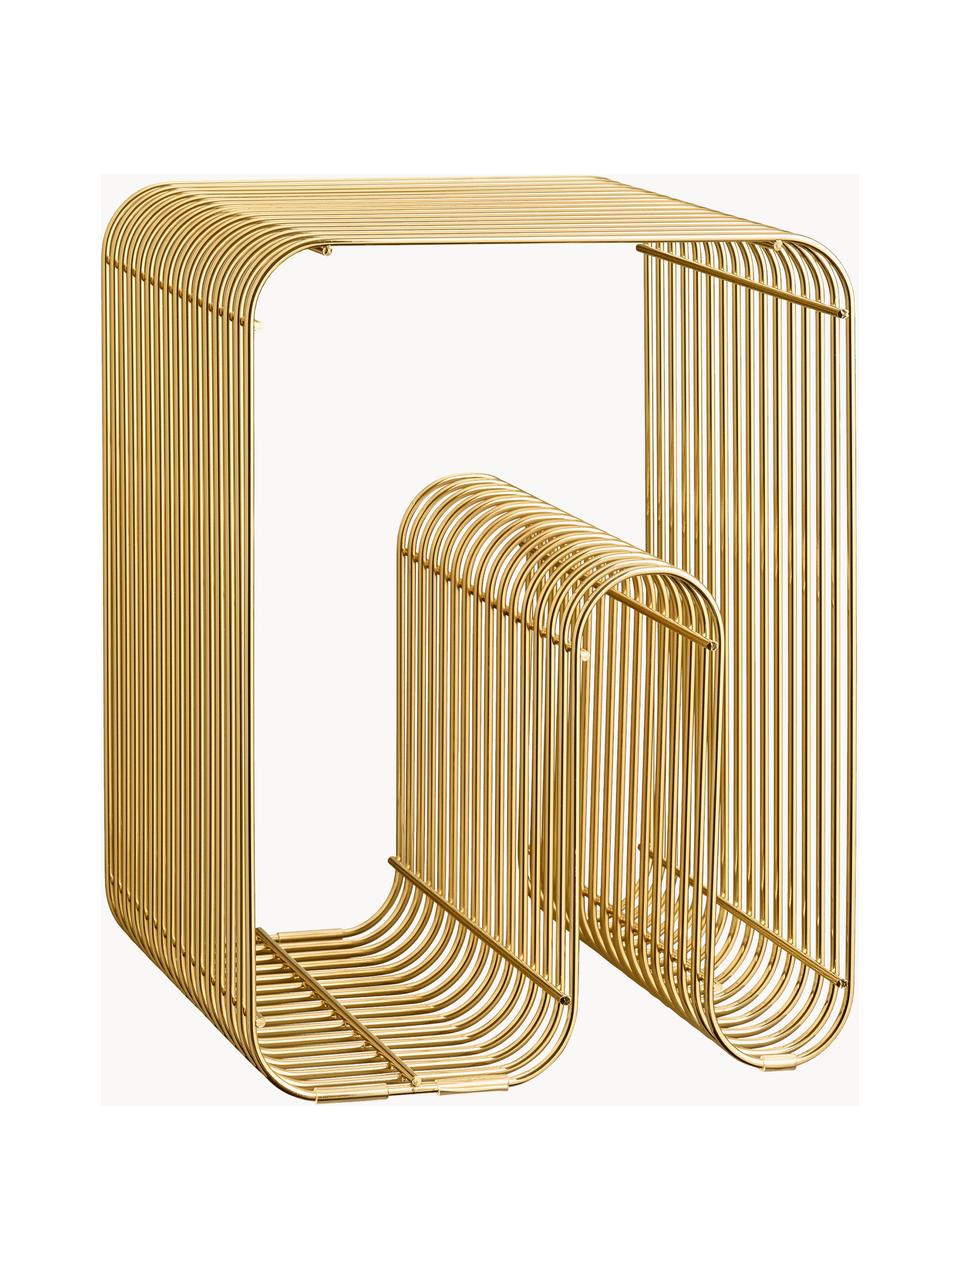 Metall-Beistelltisch Curva mit Magazinhalter, Metall, beschichtet, Goldfarben, B 32 x H 43 cm